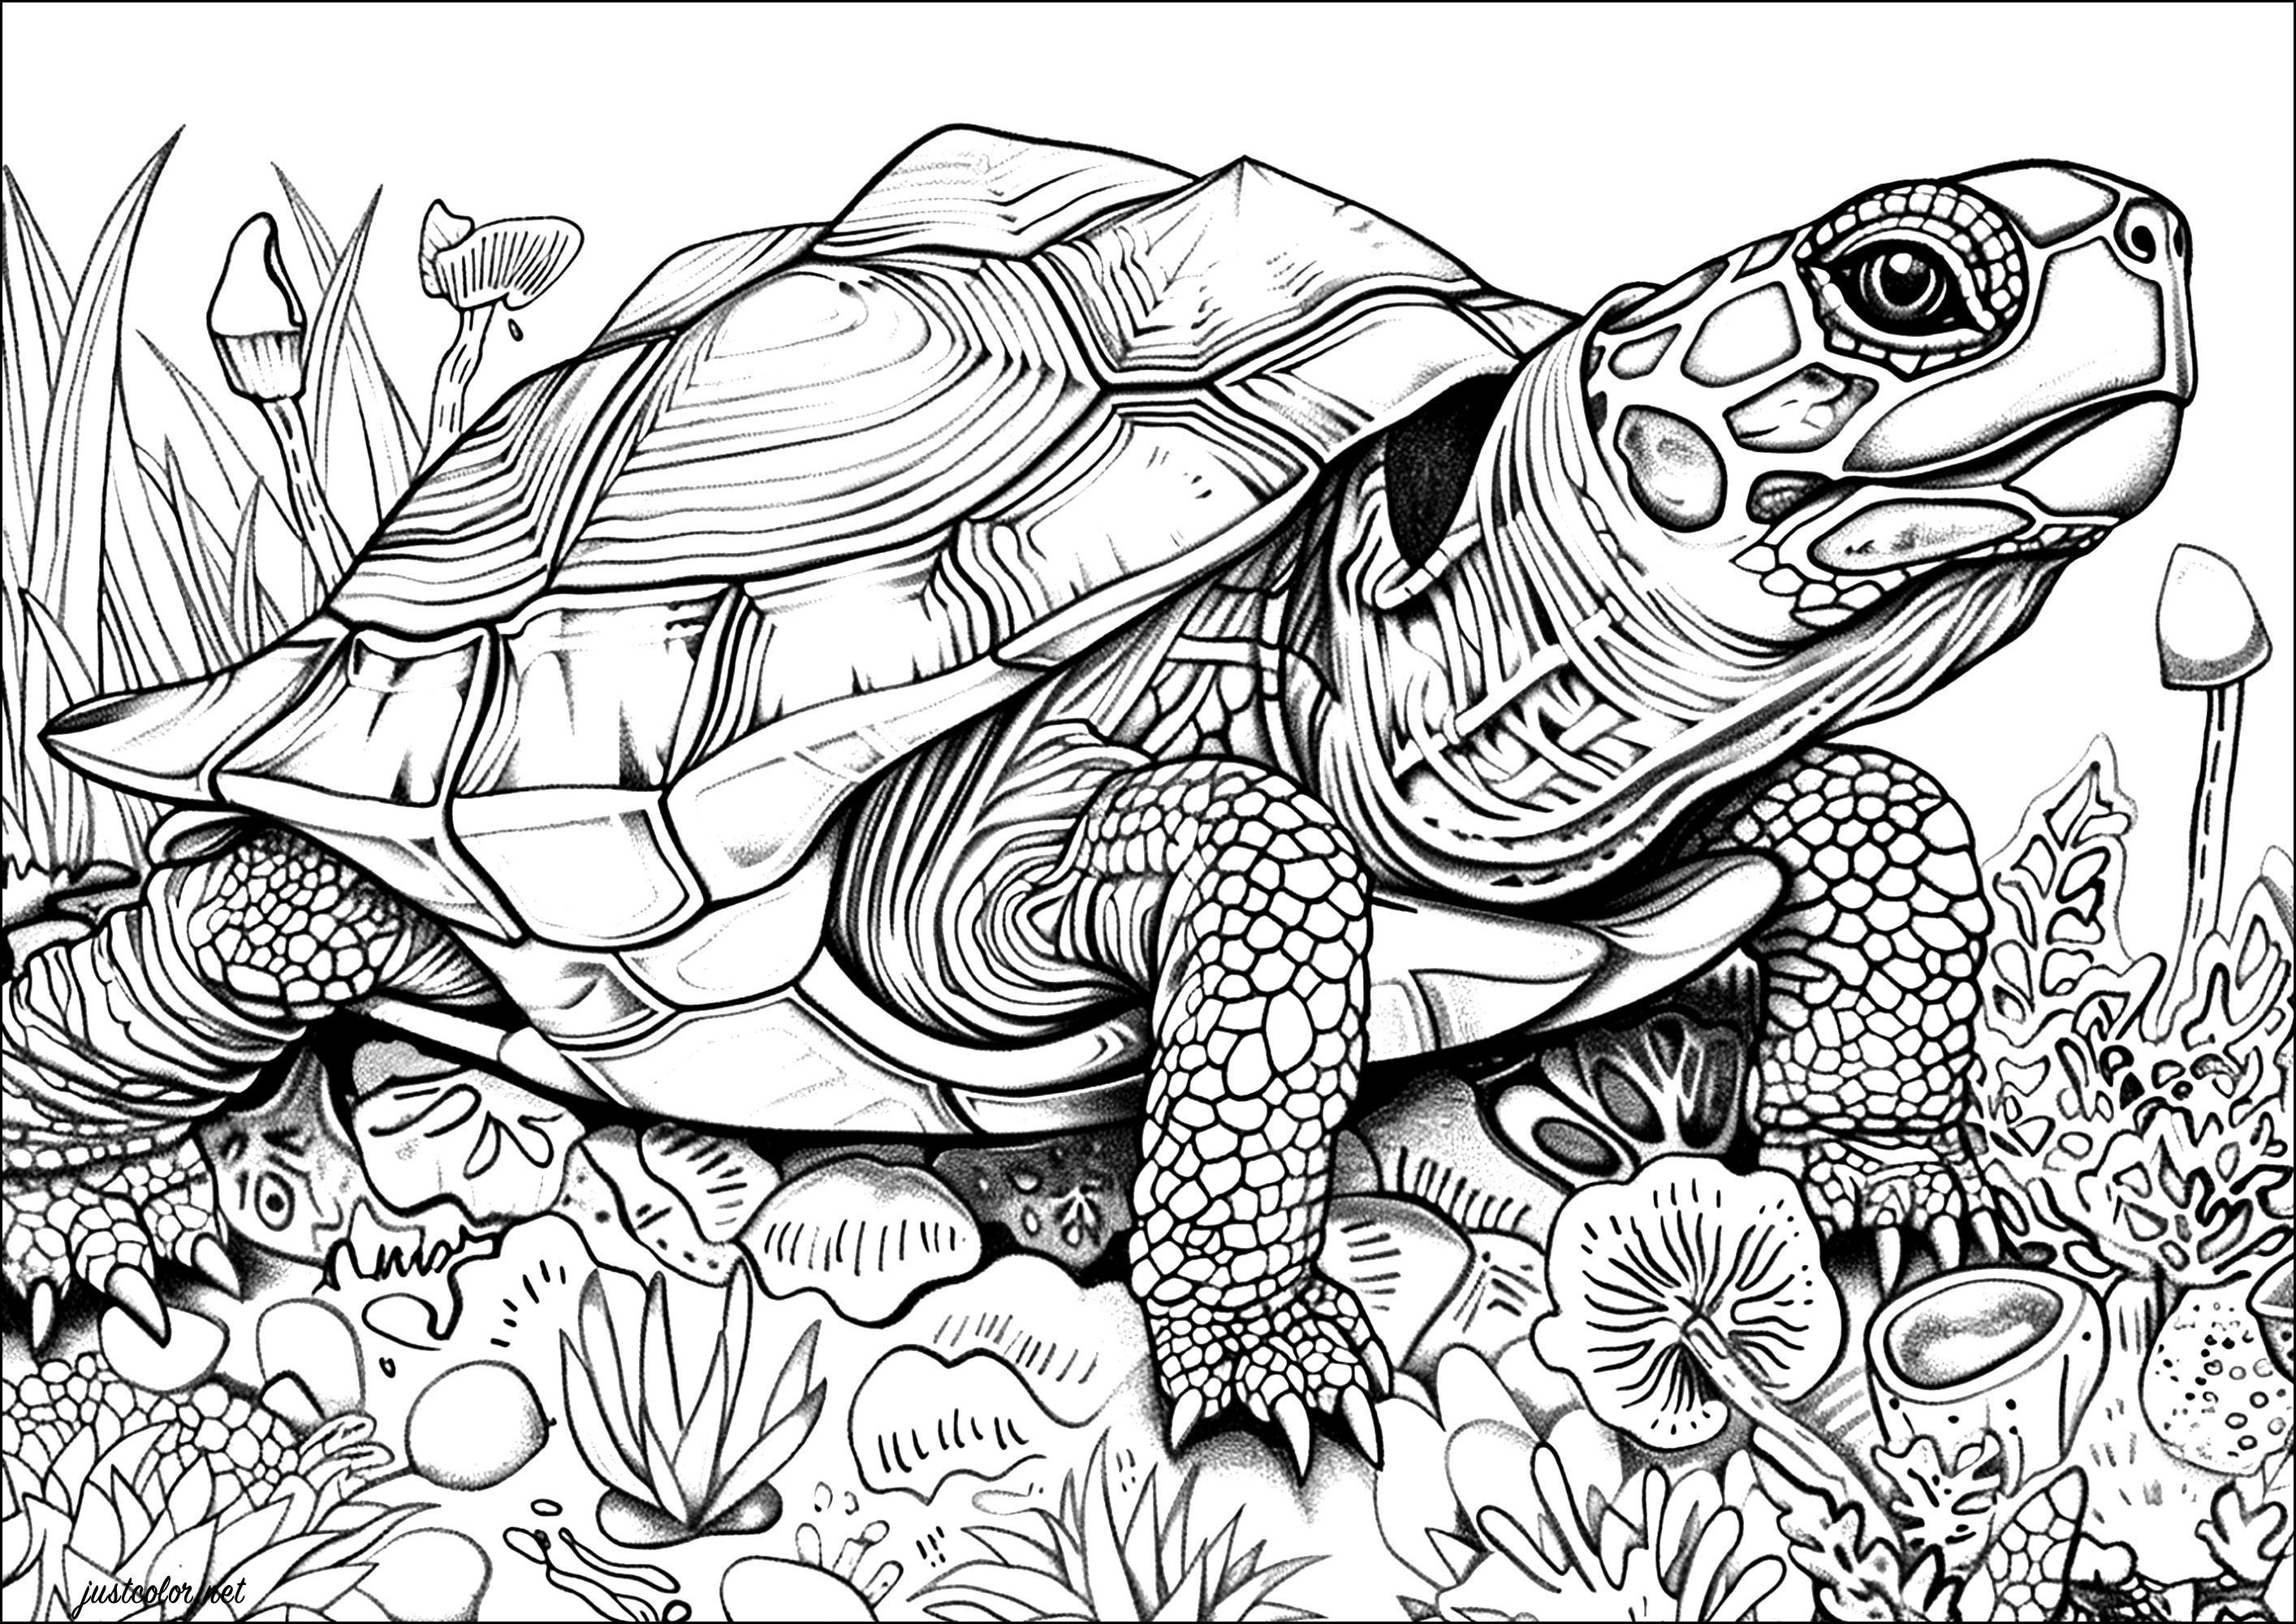 Pagina da colorare di tartaruga realistica con molti dettagli da colorare. Le squame del guscio di questa tartaruga sono rappresentate minuziosamente, dando l'impressione di poterle toccare con la punta delle dita.Prendete le matite colorate o i pennarelli e lasciatevi trasportare dalla bellezza di questa maestosa tartaruga.